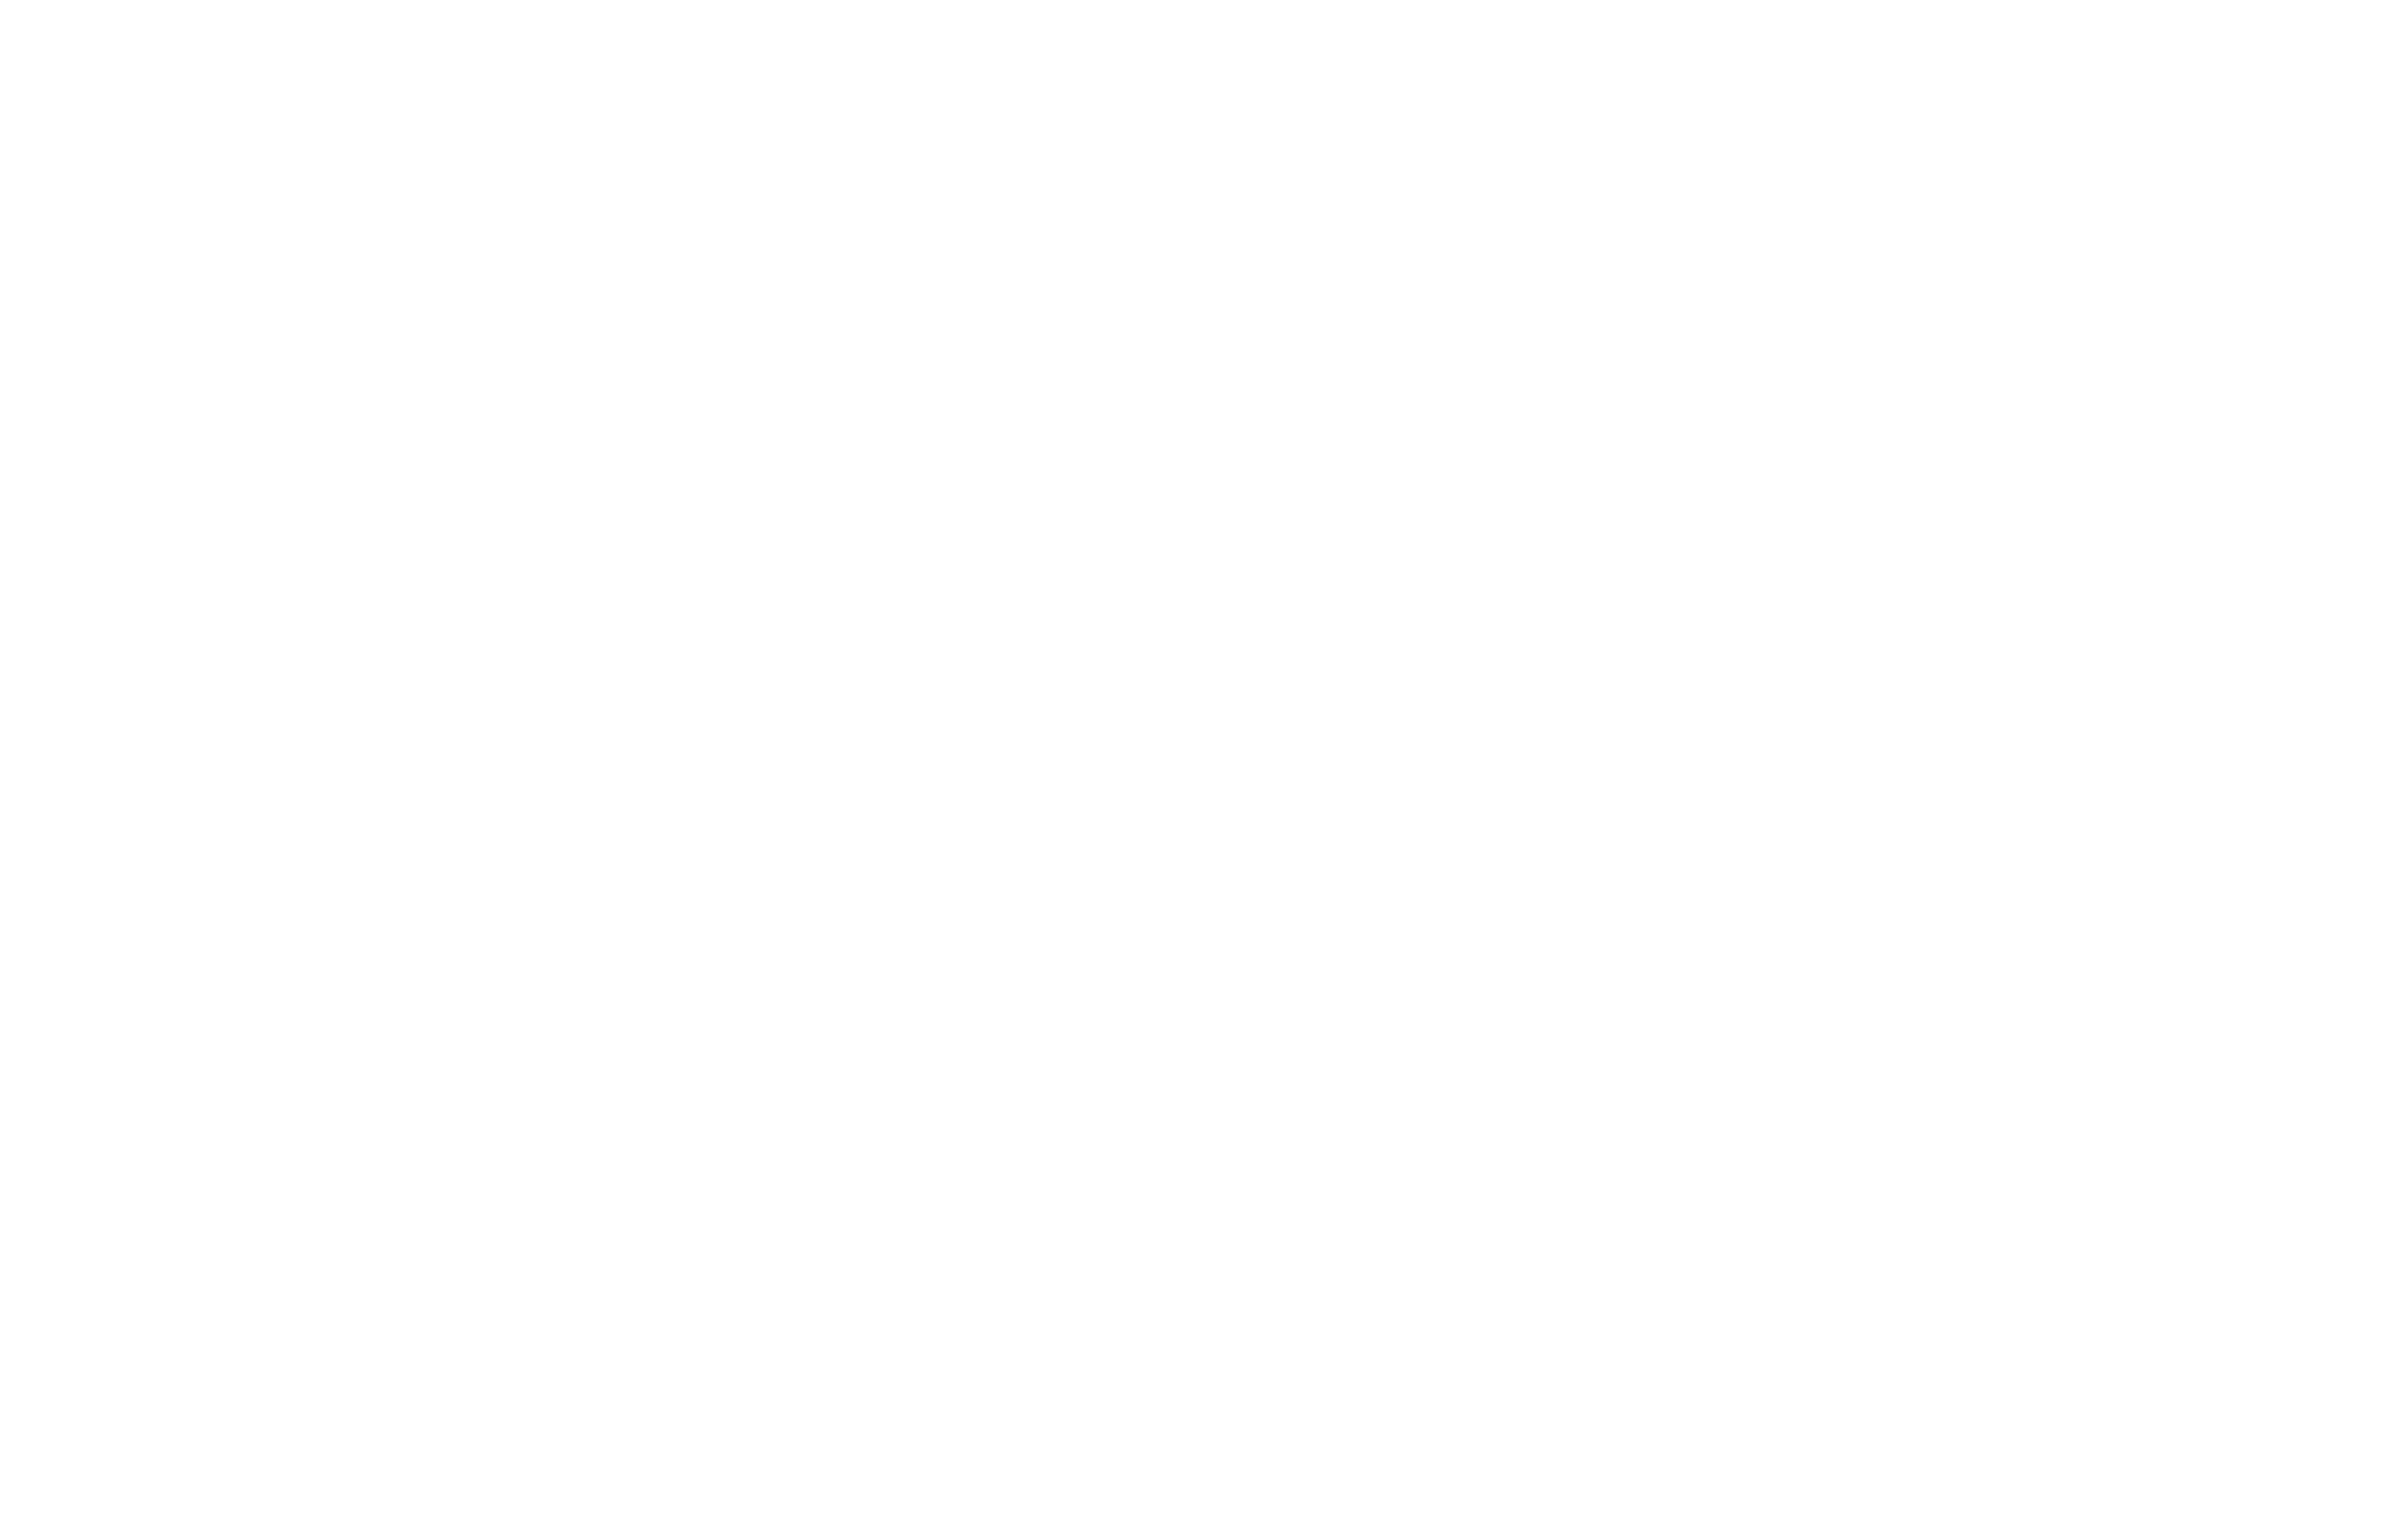 DataOs logo white